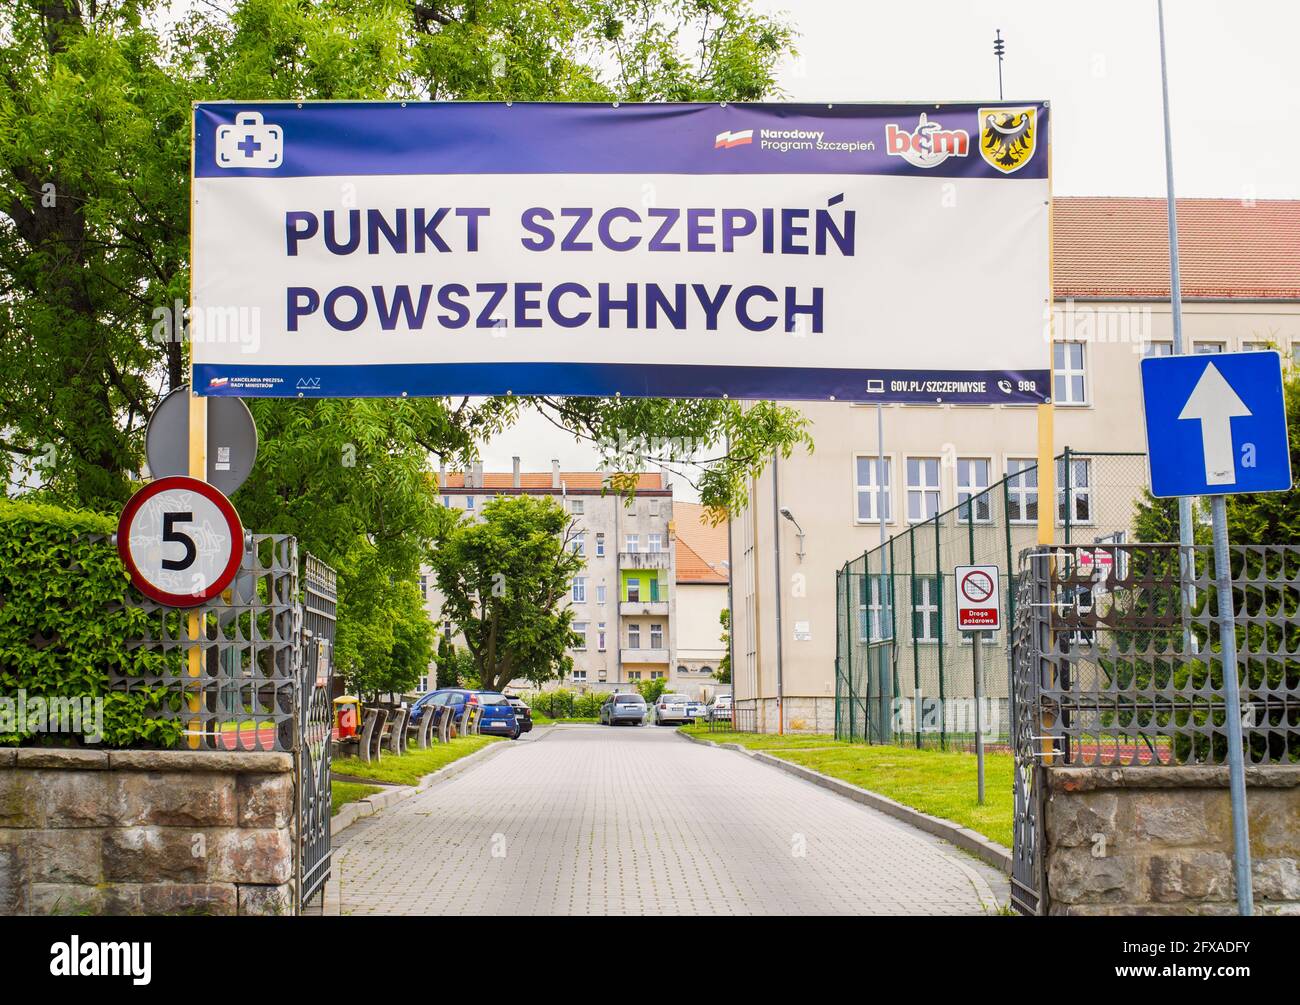 Gran pancarta sobre la entrada al punto de vacunación Covid-19 en Brzeg, Polonia. Programa nacional de vacunación polaco. Campaña de vacunación Covid. Foto de stock